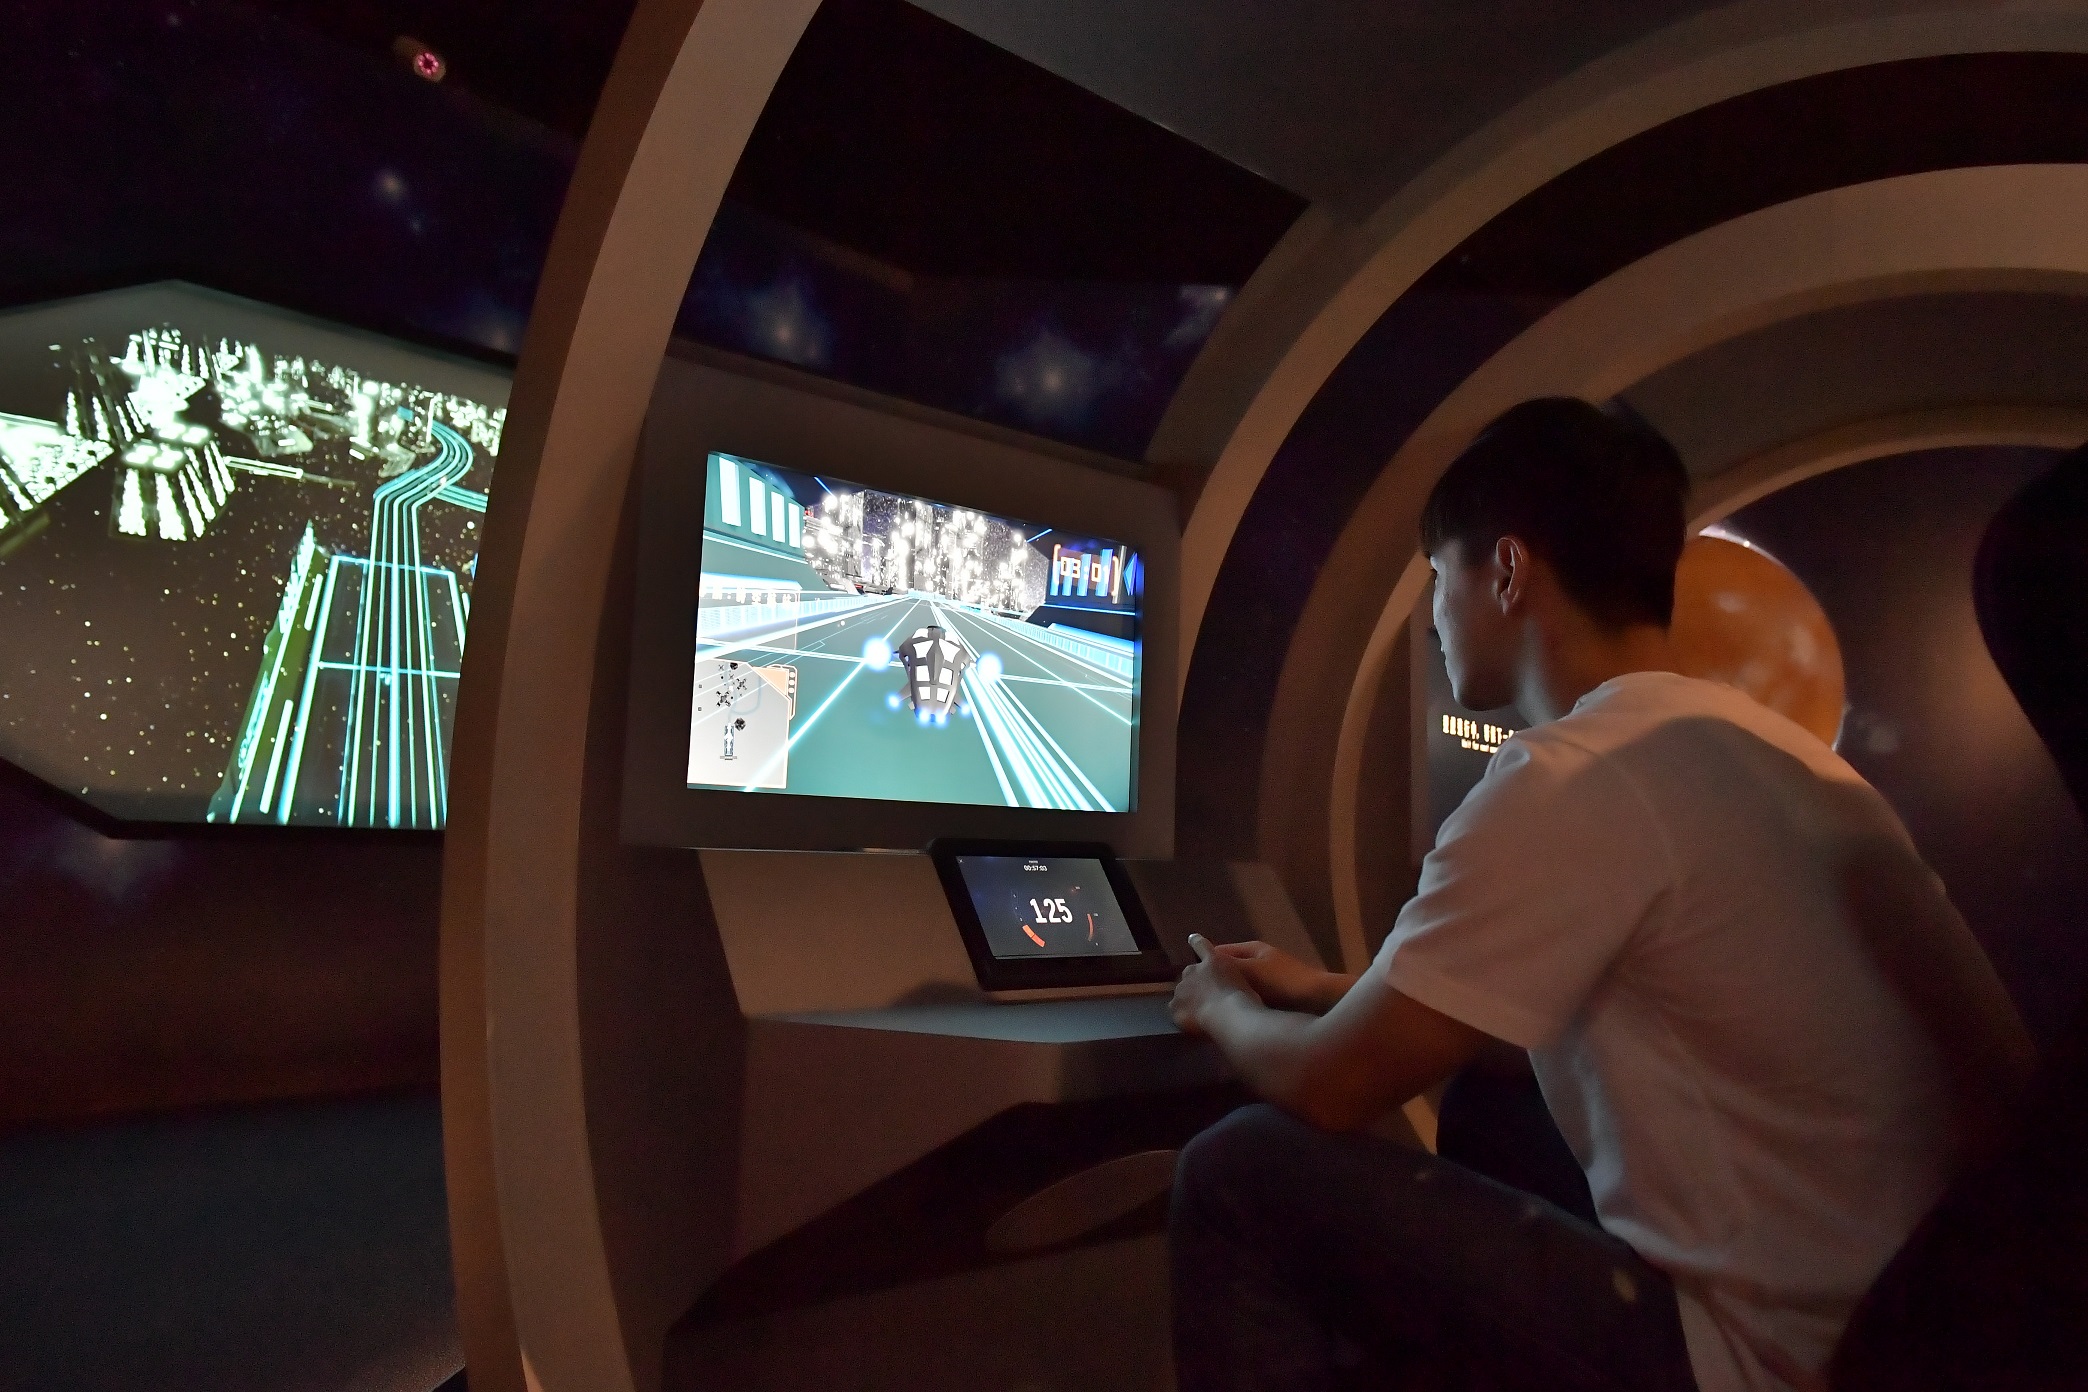 參觀者可體驗駕駛具有車載資通訊技術的智能車，在浩瀚星際廣場馳騁的快感。